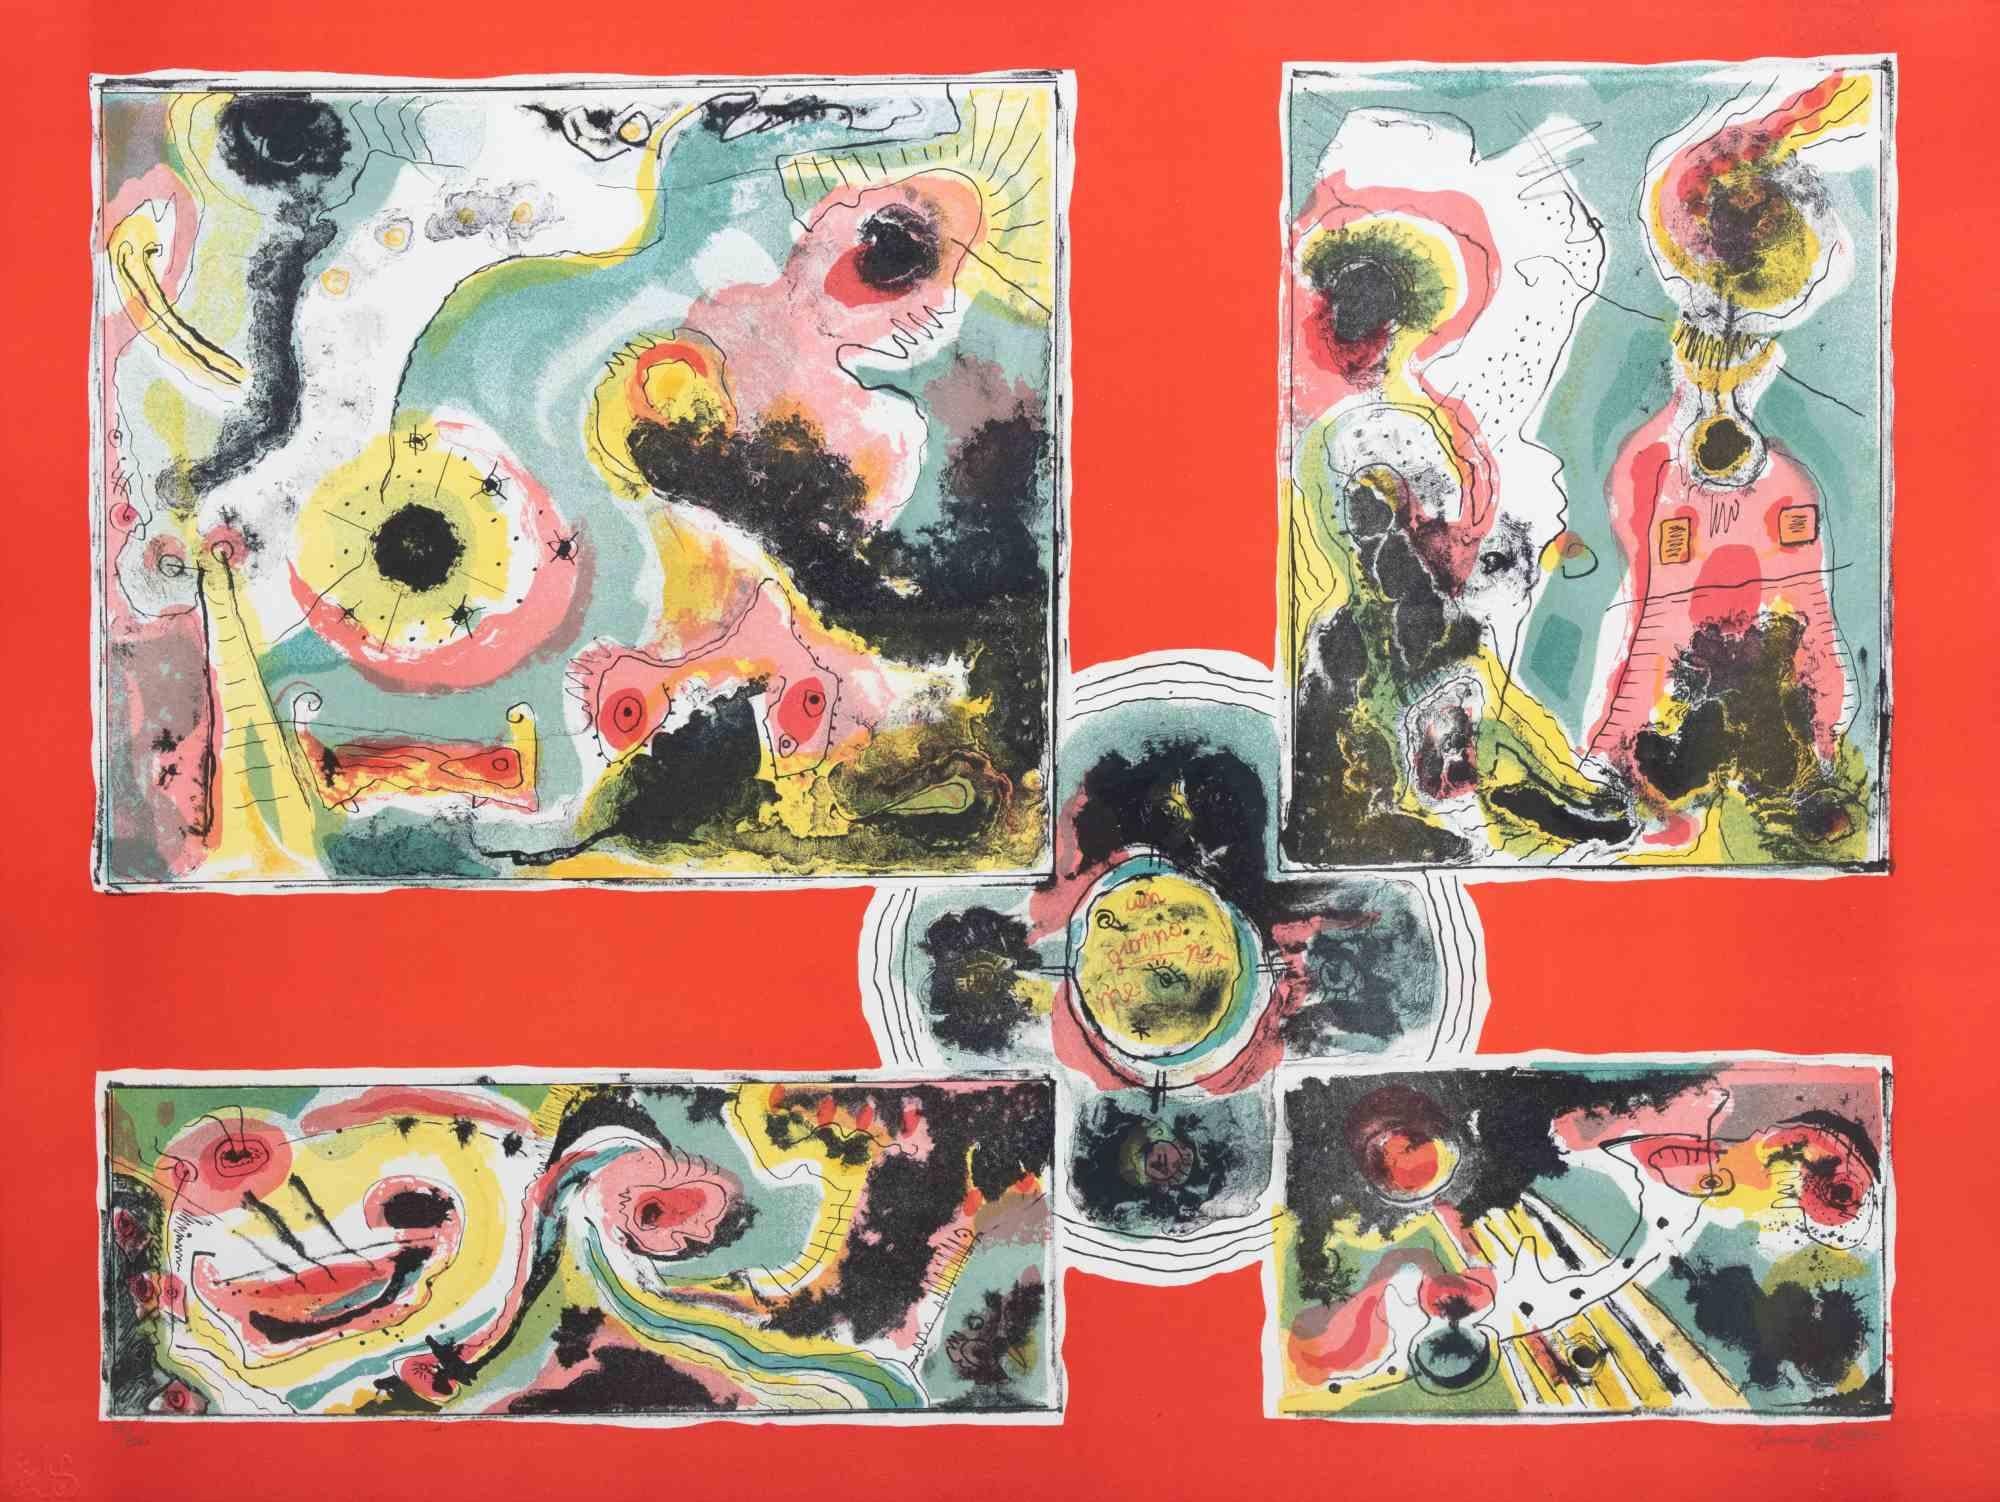 Red Abstract ist ein zeitgenössisches Kunstwerk von Le Pond aus den 1970er Jahren.

Gemischtfarbige Lithographie.

Handsigniert am unteren Rand.

Am unteren Rand nummeriert.

Auflage von 39/100